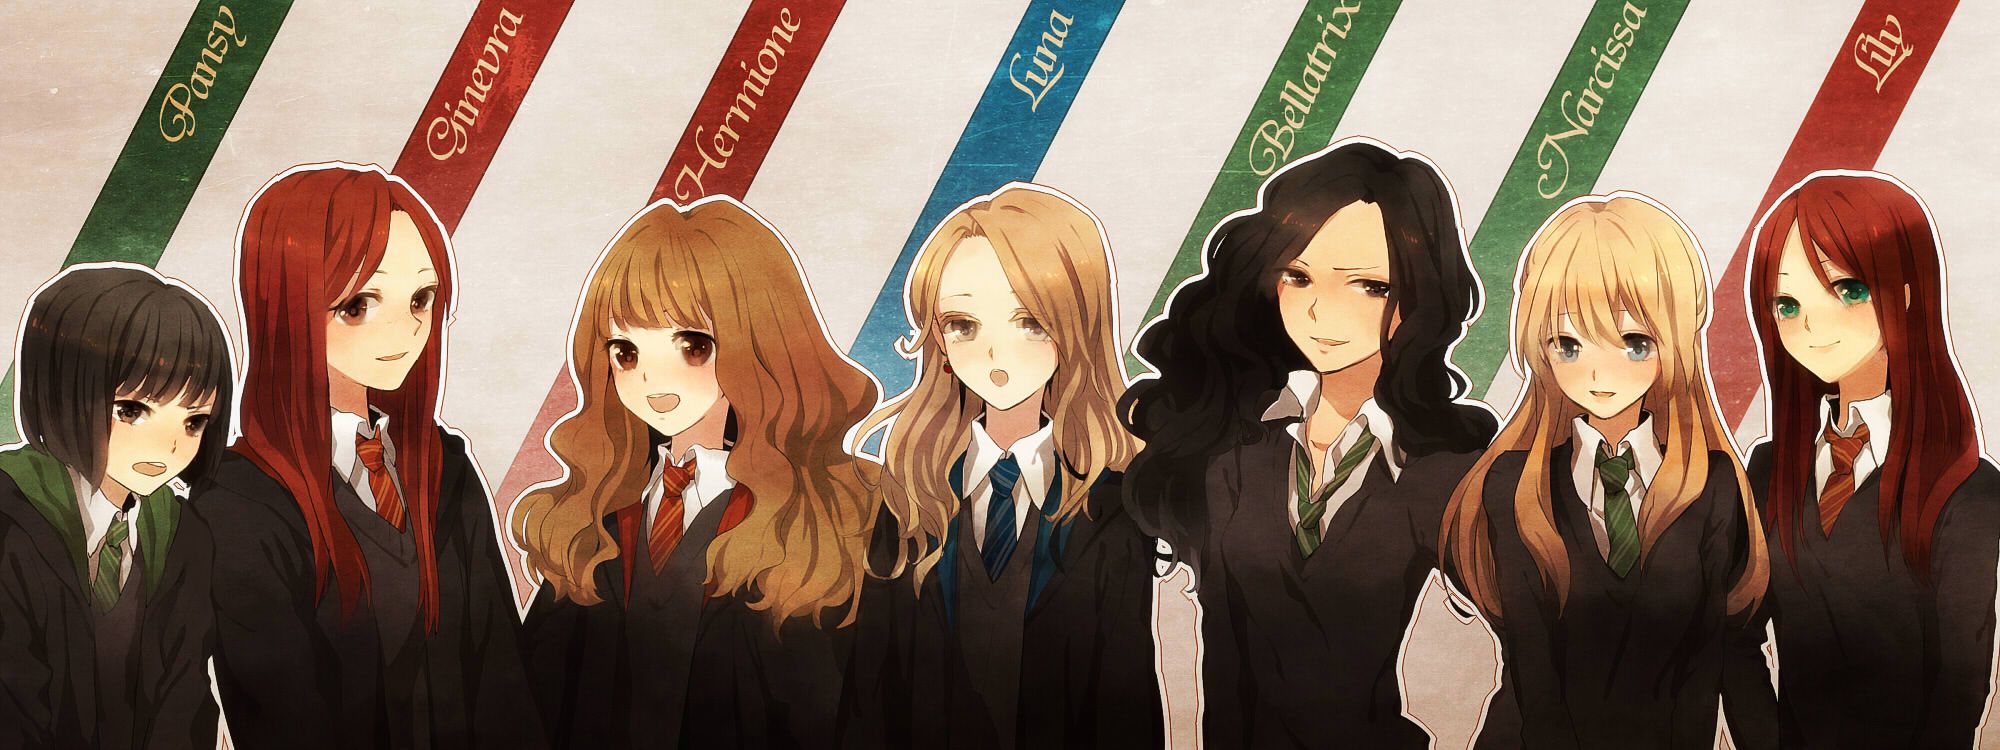 Hermione là một trong những nhân vật được yêu thích nhất trong Harry Potter. Lựa chọn Papel de parede Hermione Anime với những trường Hogwarts thần thánh và giúp bạn có thể cảm thấy được hiệu quả mà loạt tiểu thuyết này mang lại.